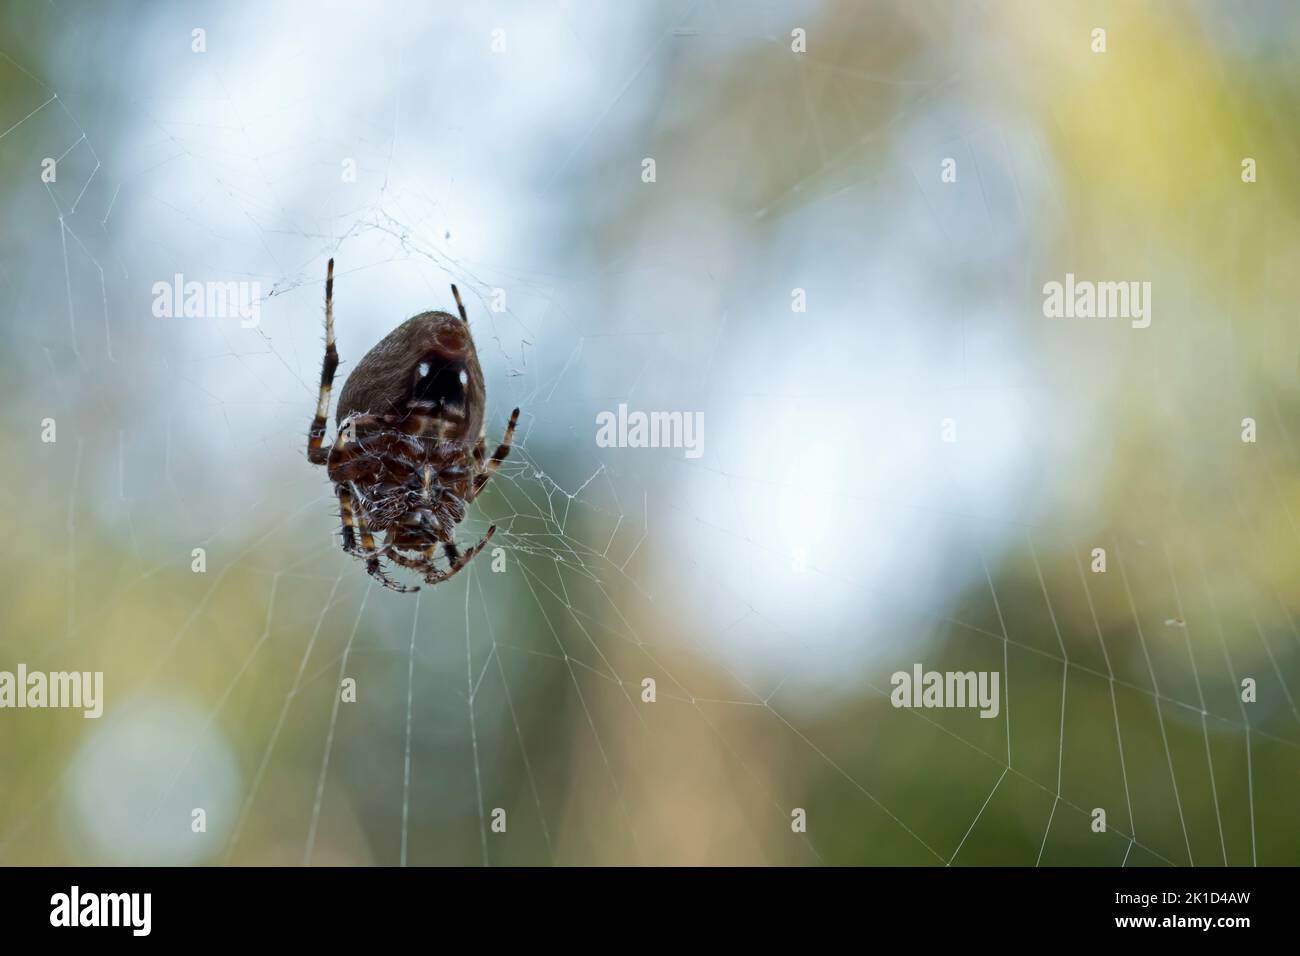 Araña tejedora de orbweaver hembra de Hentz boca abajo en su tela a finales del verano. Estas arañas son normalmente nocturnas, pero cambian a diurnas a finales del verano. Foto de stock